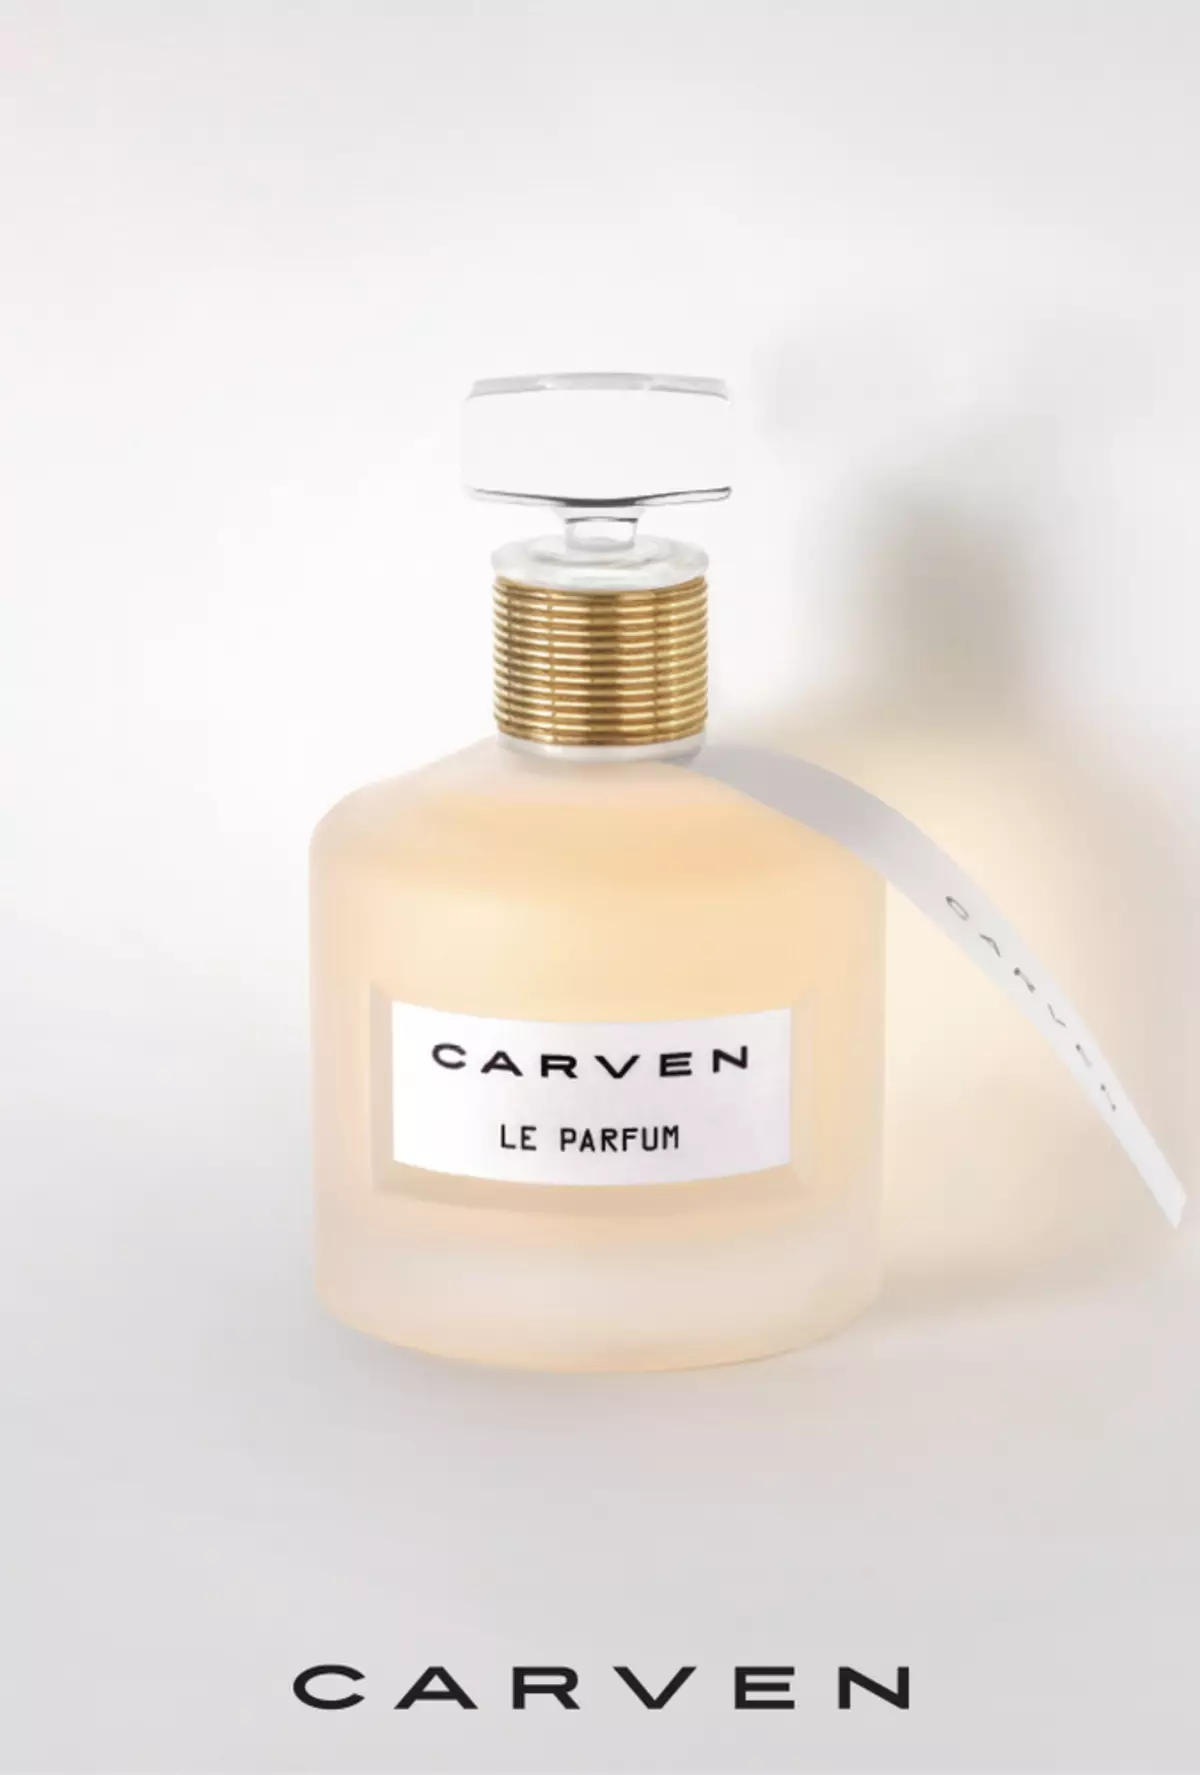 Αρώματα Carven: Γυναικεία αρώματα Le Parfum, L'Eau de Toilette και Dans MA Bulle, Αρωματοποιία Νερό για τους άνδρες 25267_4